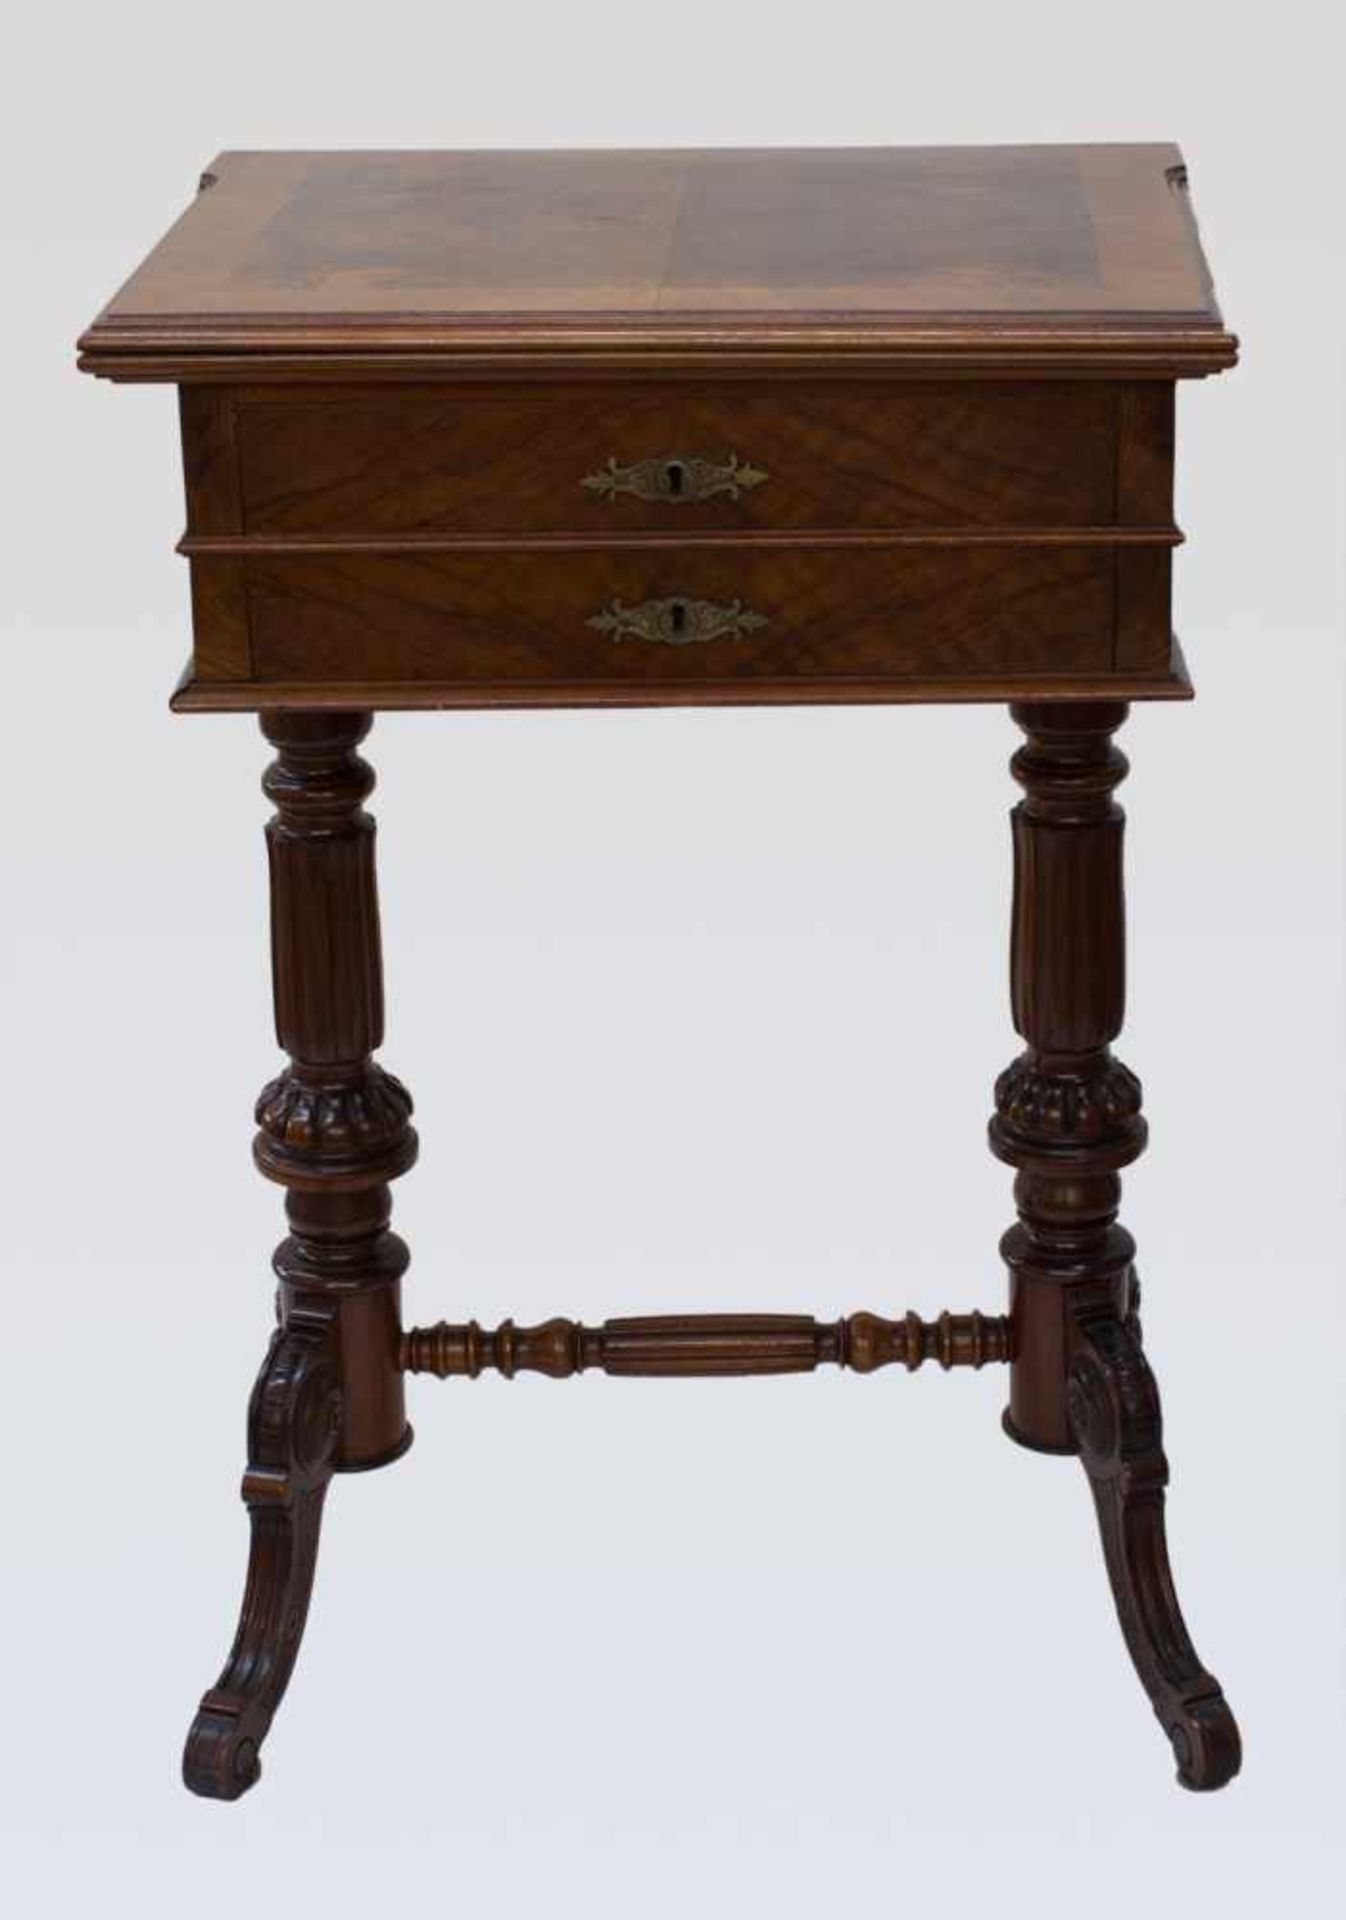 Näh- / Spieltisch Historismus um 1880, 2 Schübiger Tisch mit Innenleben u. klappbarer Deckplatte zum